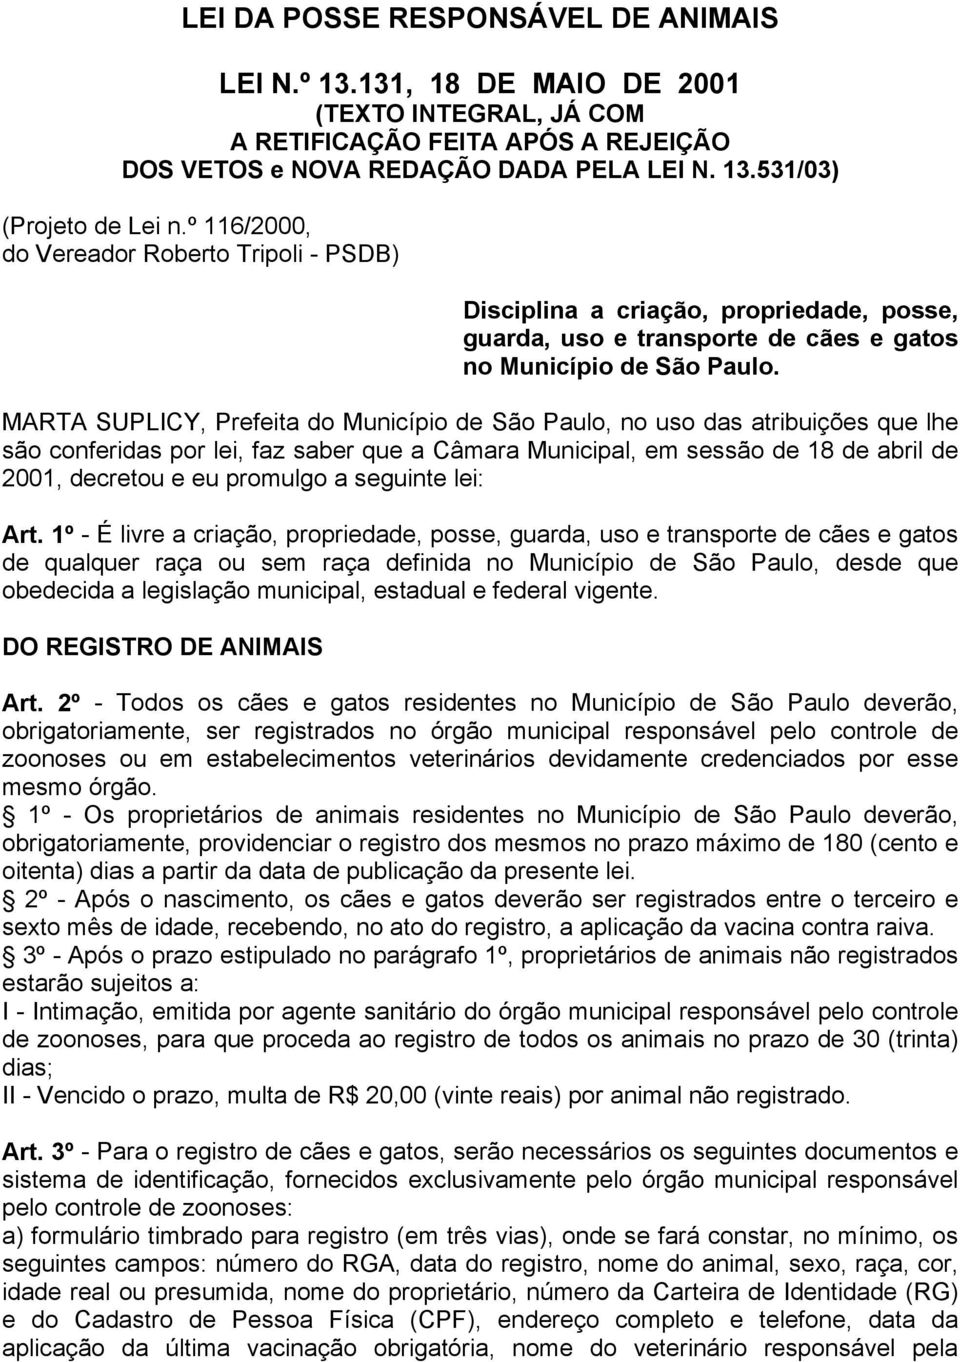 MARTA SUPLICY, Prefeita do Município de São Paulo, no uso das atribuições que lhe são conferidas por lei, faz saber que a Câmara Municipal, em sessão de 18 de abril de 2001, decretou e eu promulgo a